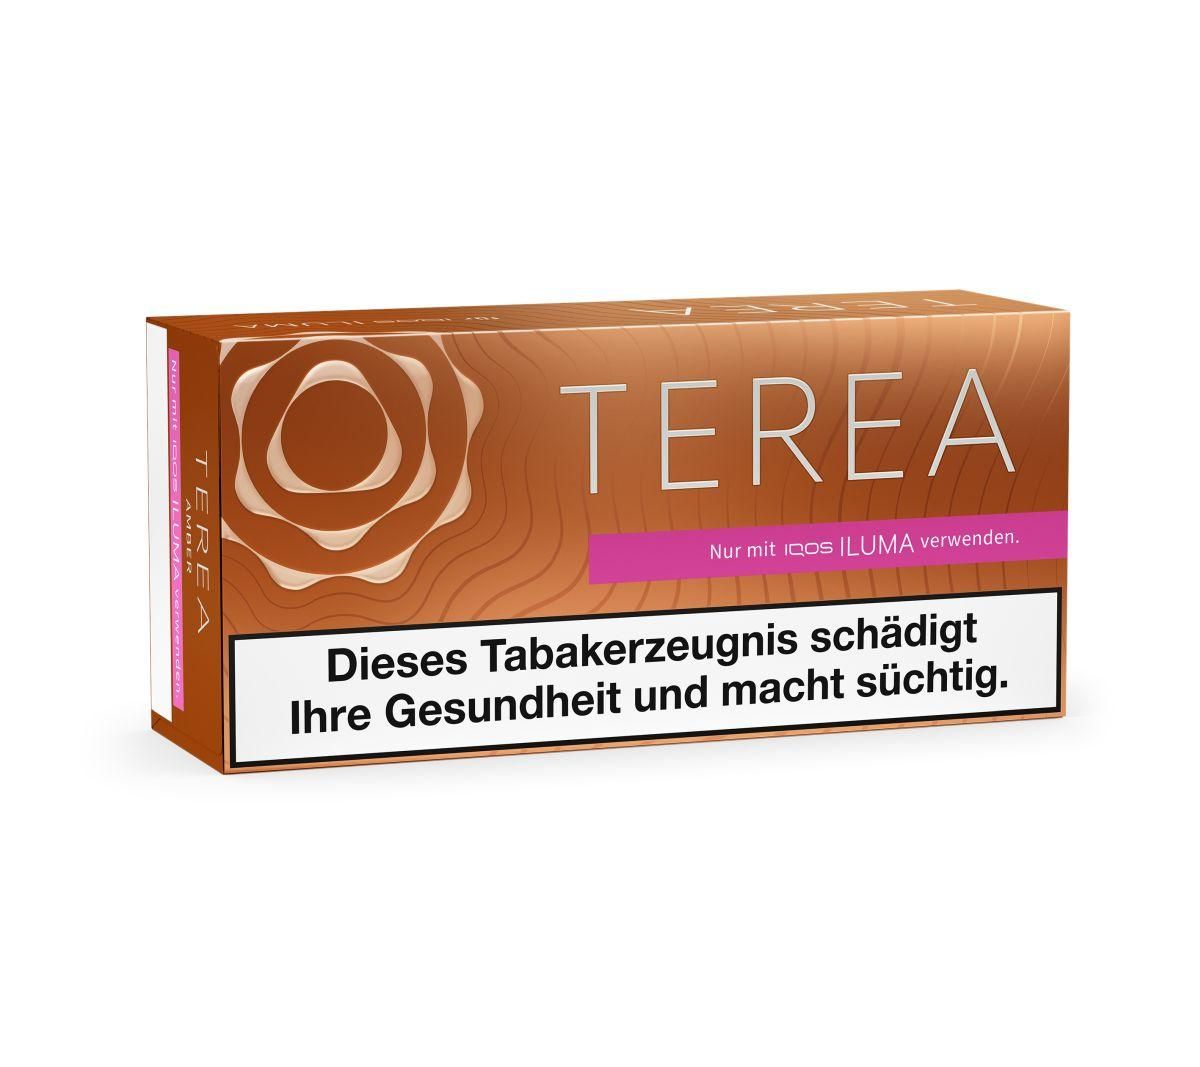 IQOS Terea - Bronze Tabaksticks für IQOS ILUMA / ILUMA ONE (20 Stück)